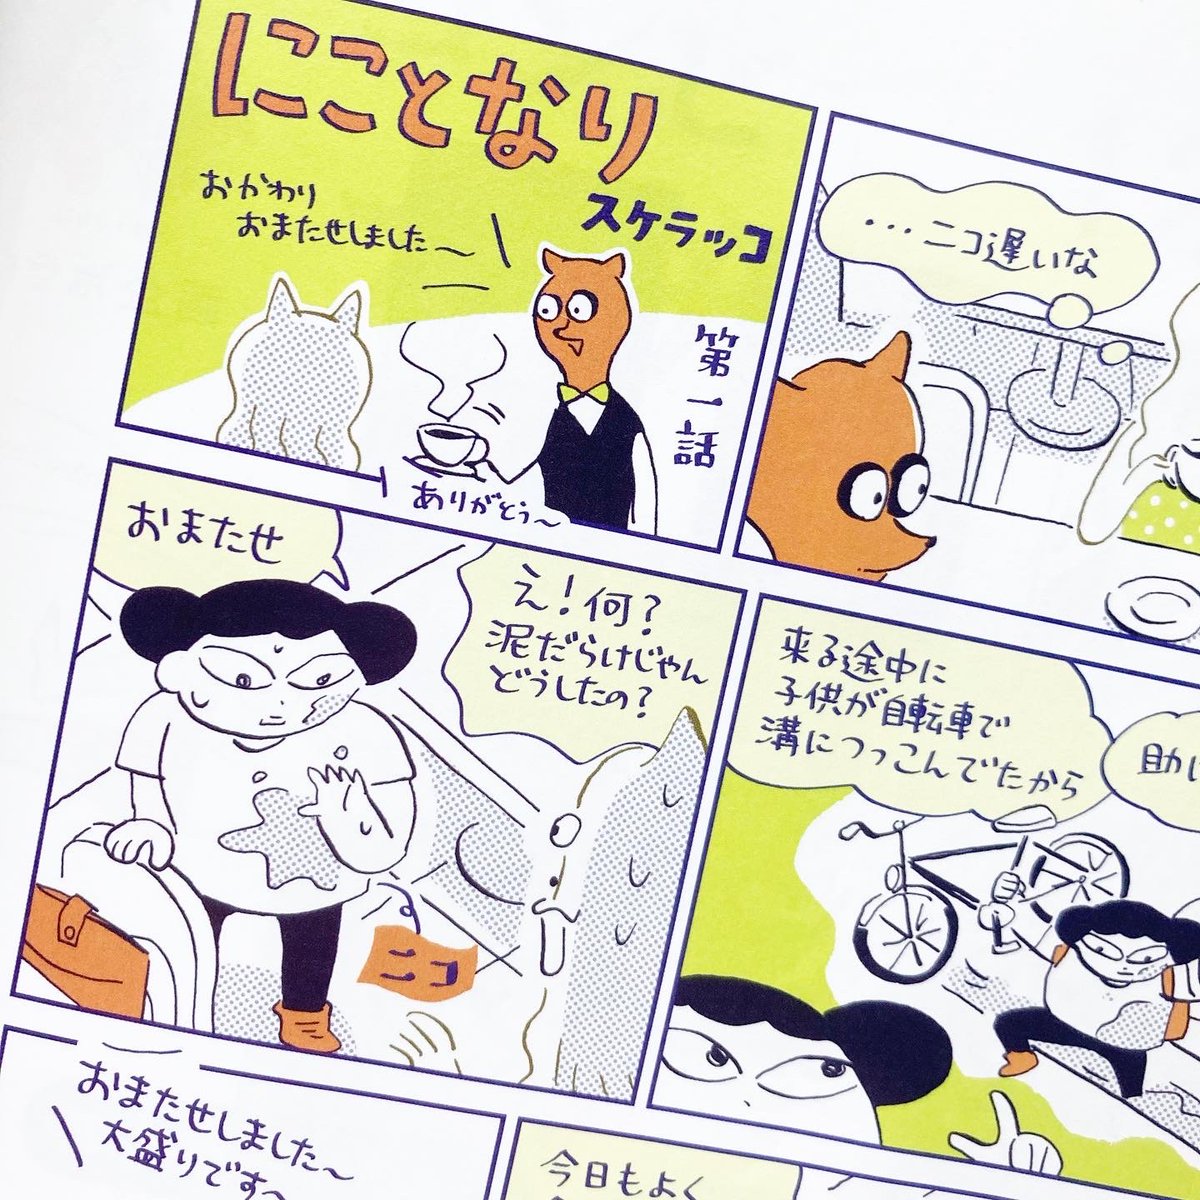 本日発売のHanakoで1ページ漫画の連載始まりました。

『にことなり』です。好きなキャラクターができて嬉しいのでぜひ読んでみてください!

今月の特集は「J SONGBOOK 日本の音楽を学ぼう!」
KinKi Kidsのおふたりが表紙です。 